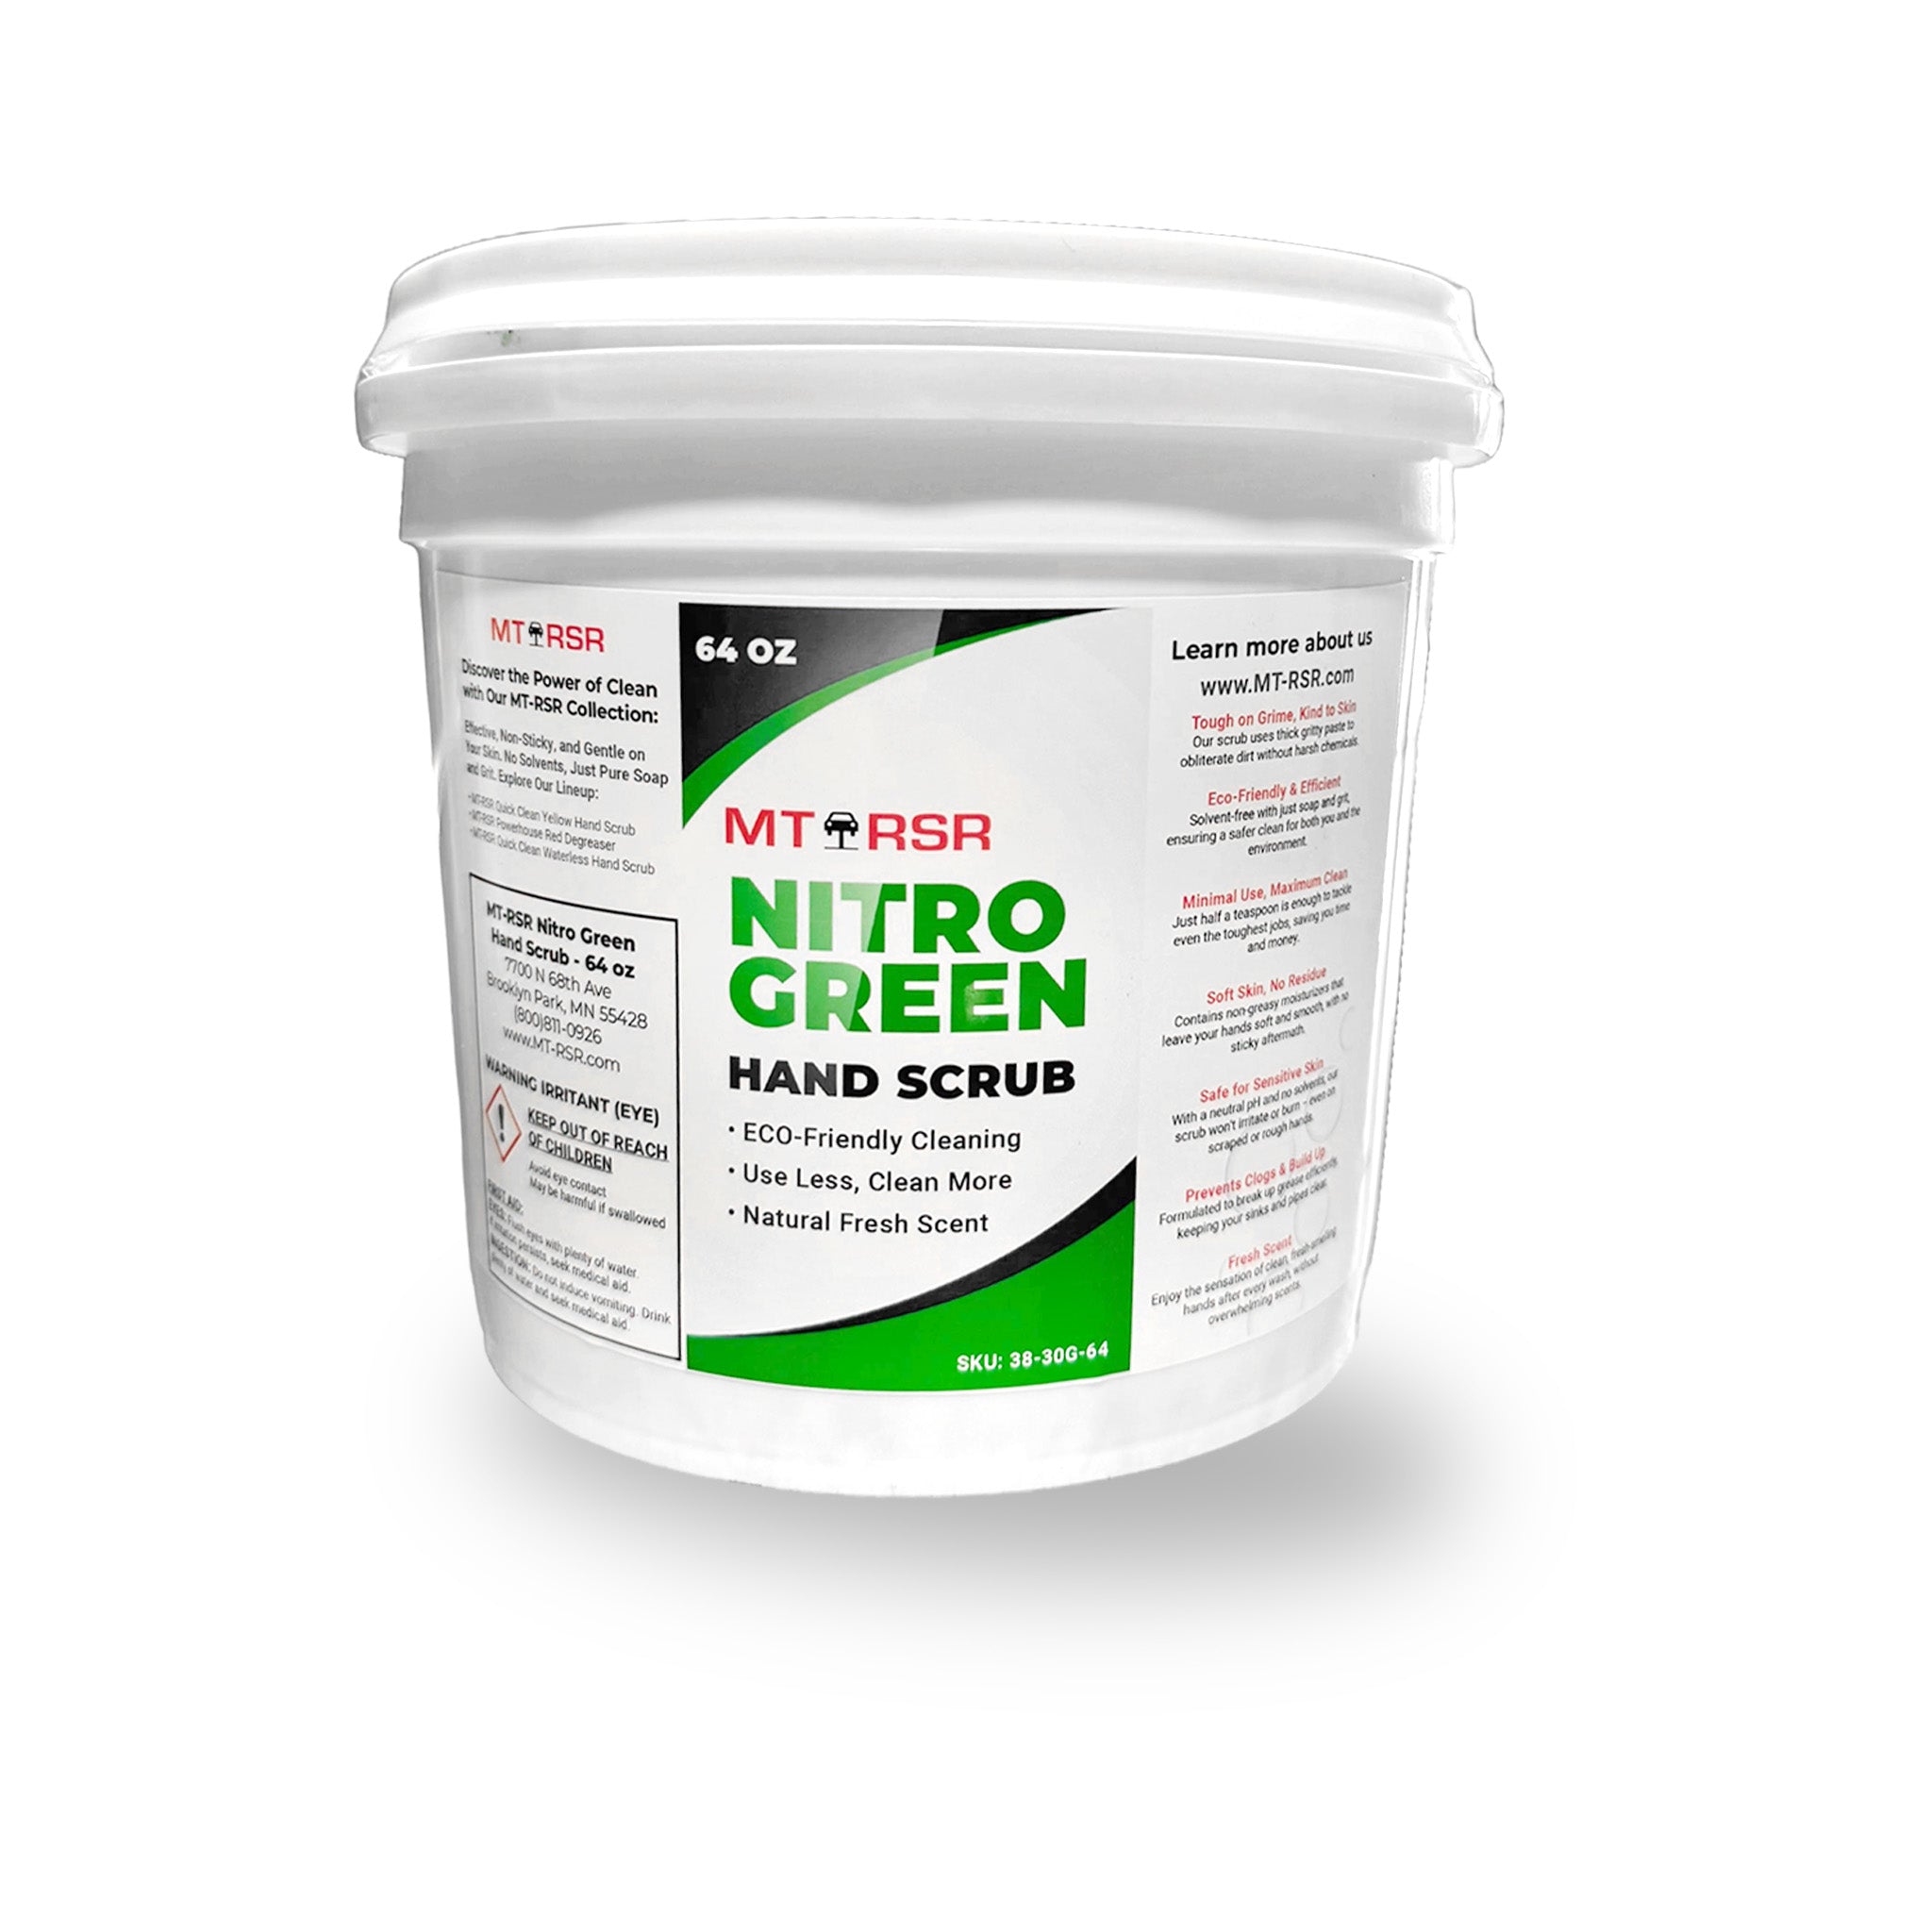 MT-RSR Nitro Green Hand Scrub - 64 oz